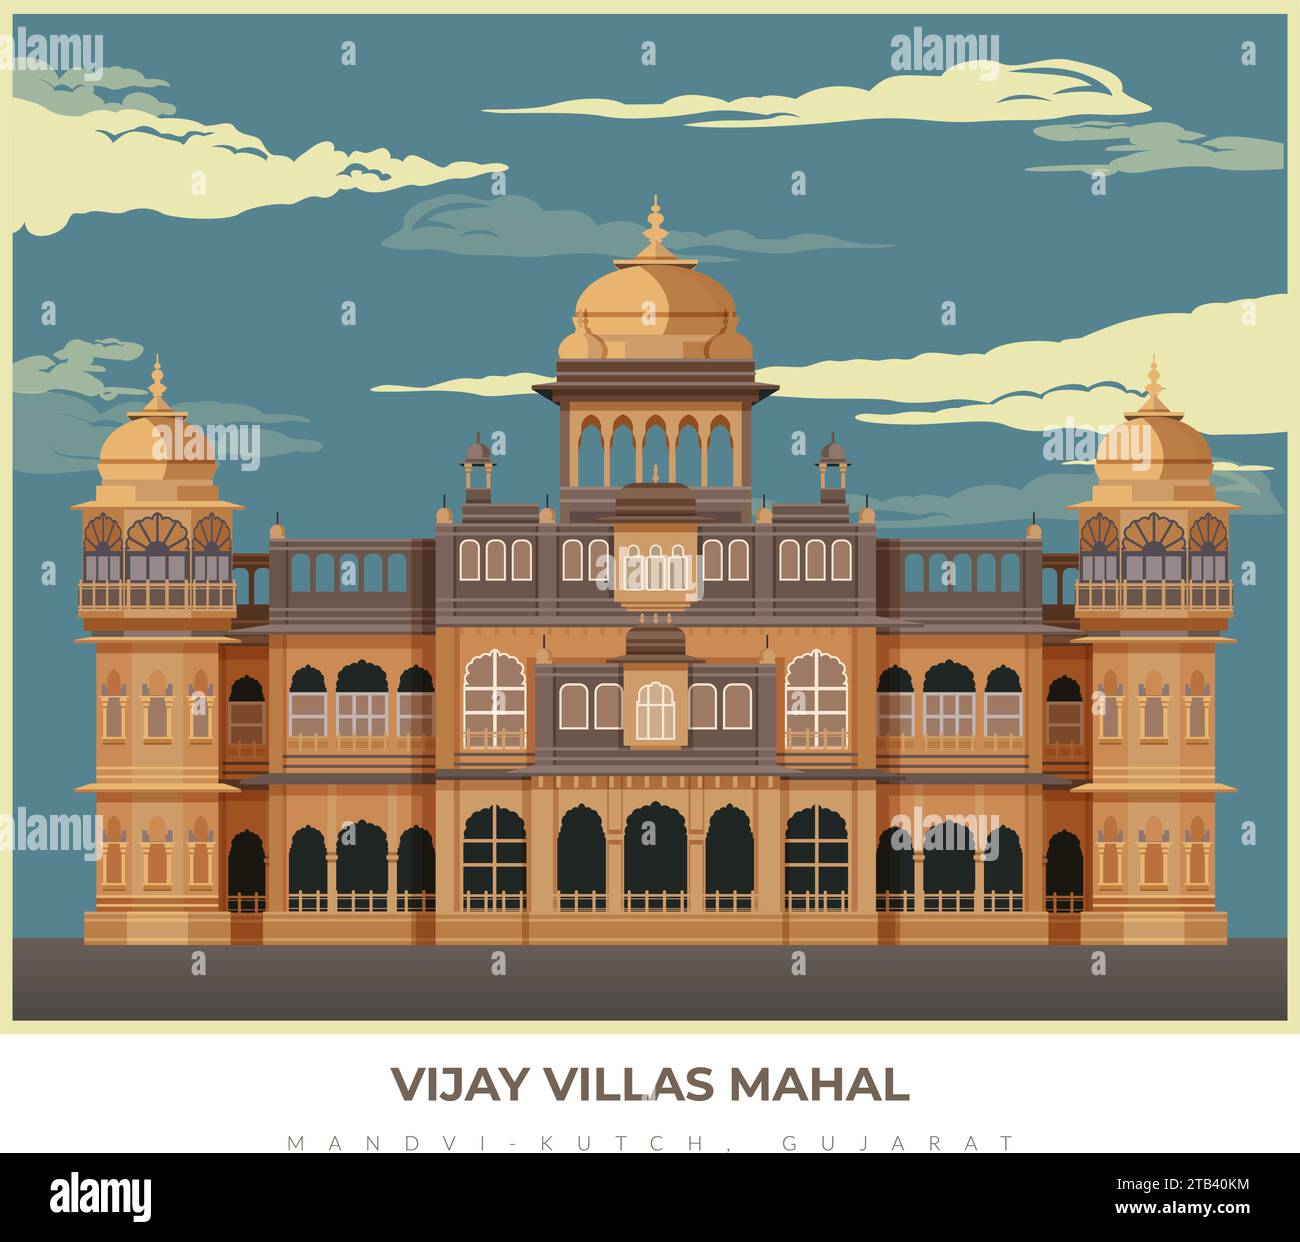 Vijaya Vilas Mahal at Mandvi - Kutch, Gujrat - Stock Illustration als EPS 10 Datei Stock Vektor